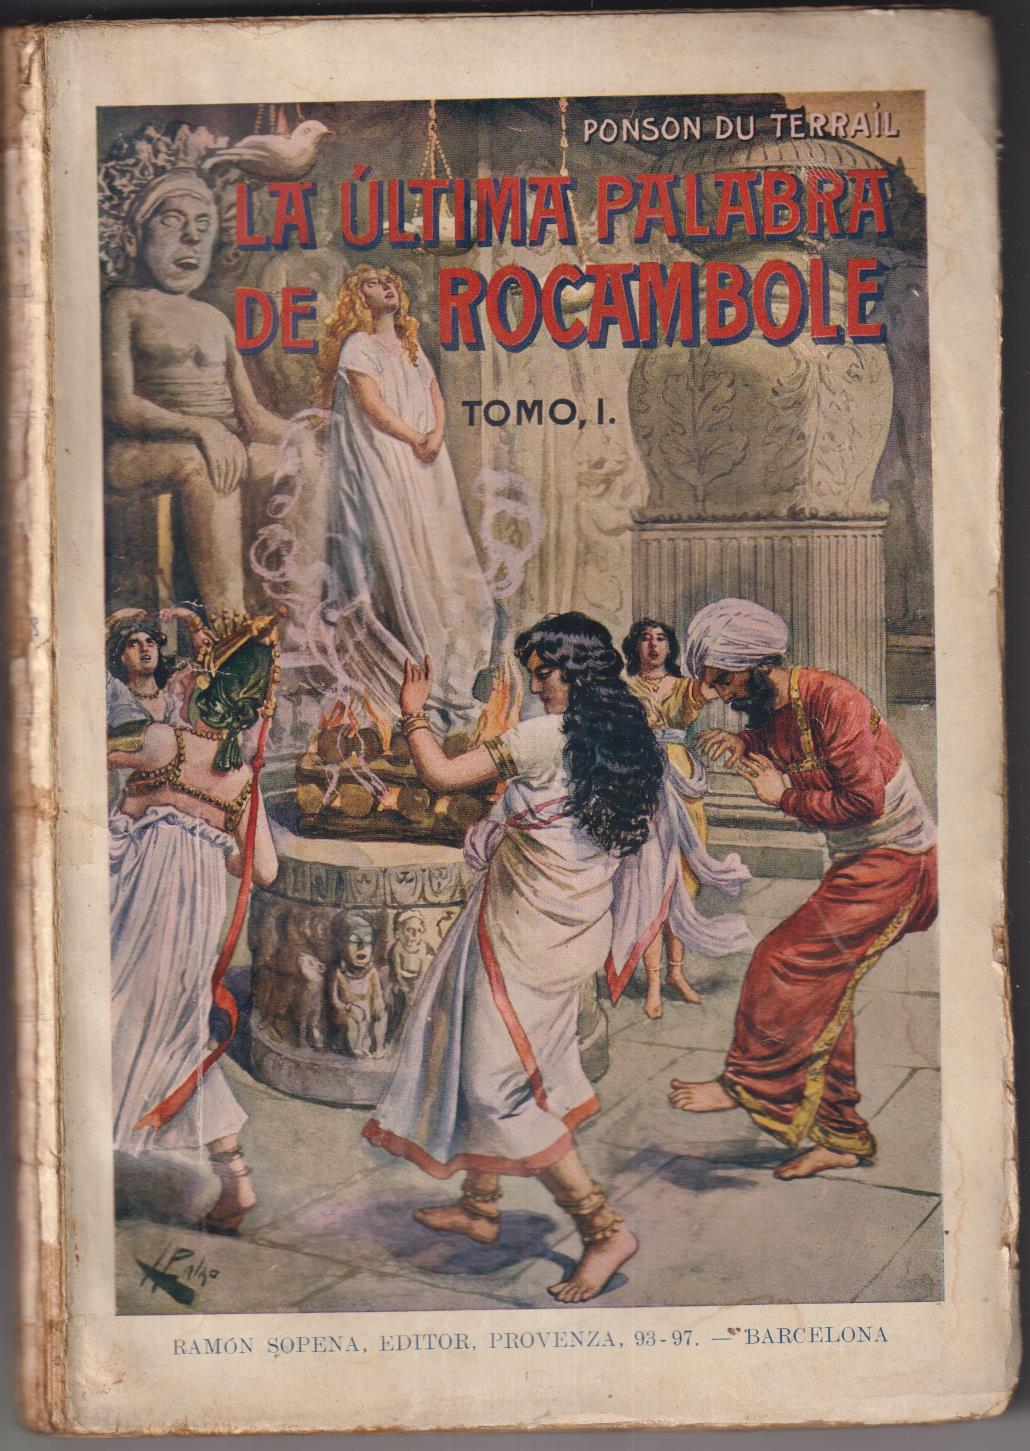 Ponson du Terrail. La última palabra de rocambole. Tomo I. Bibl. de Grandes Novelas, 1930